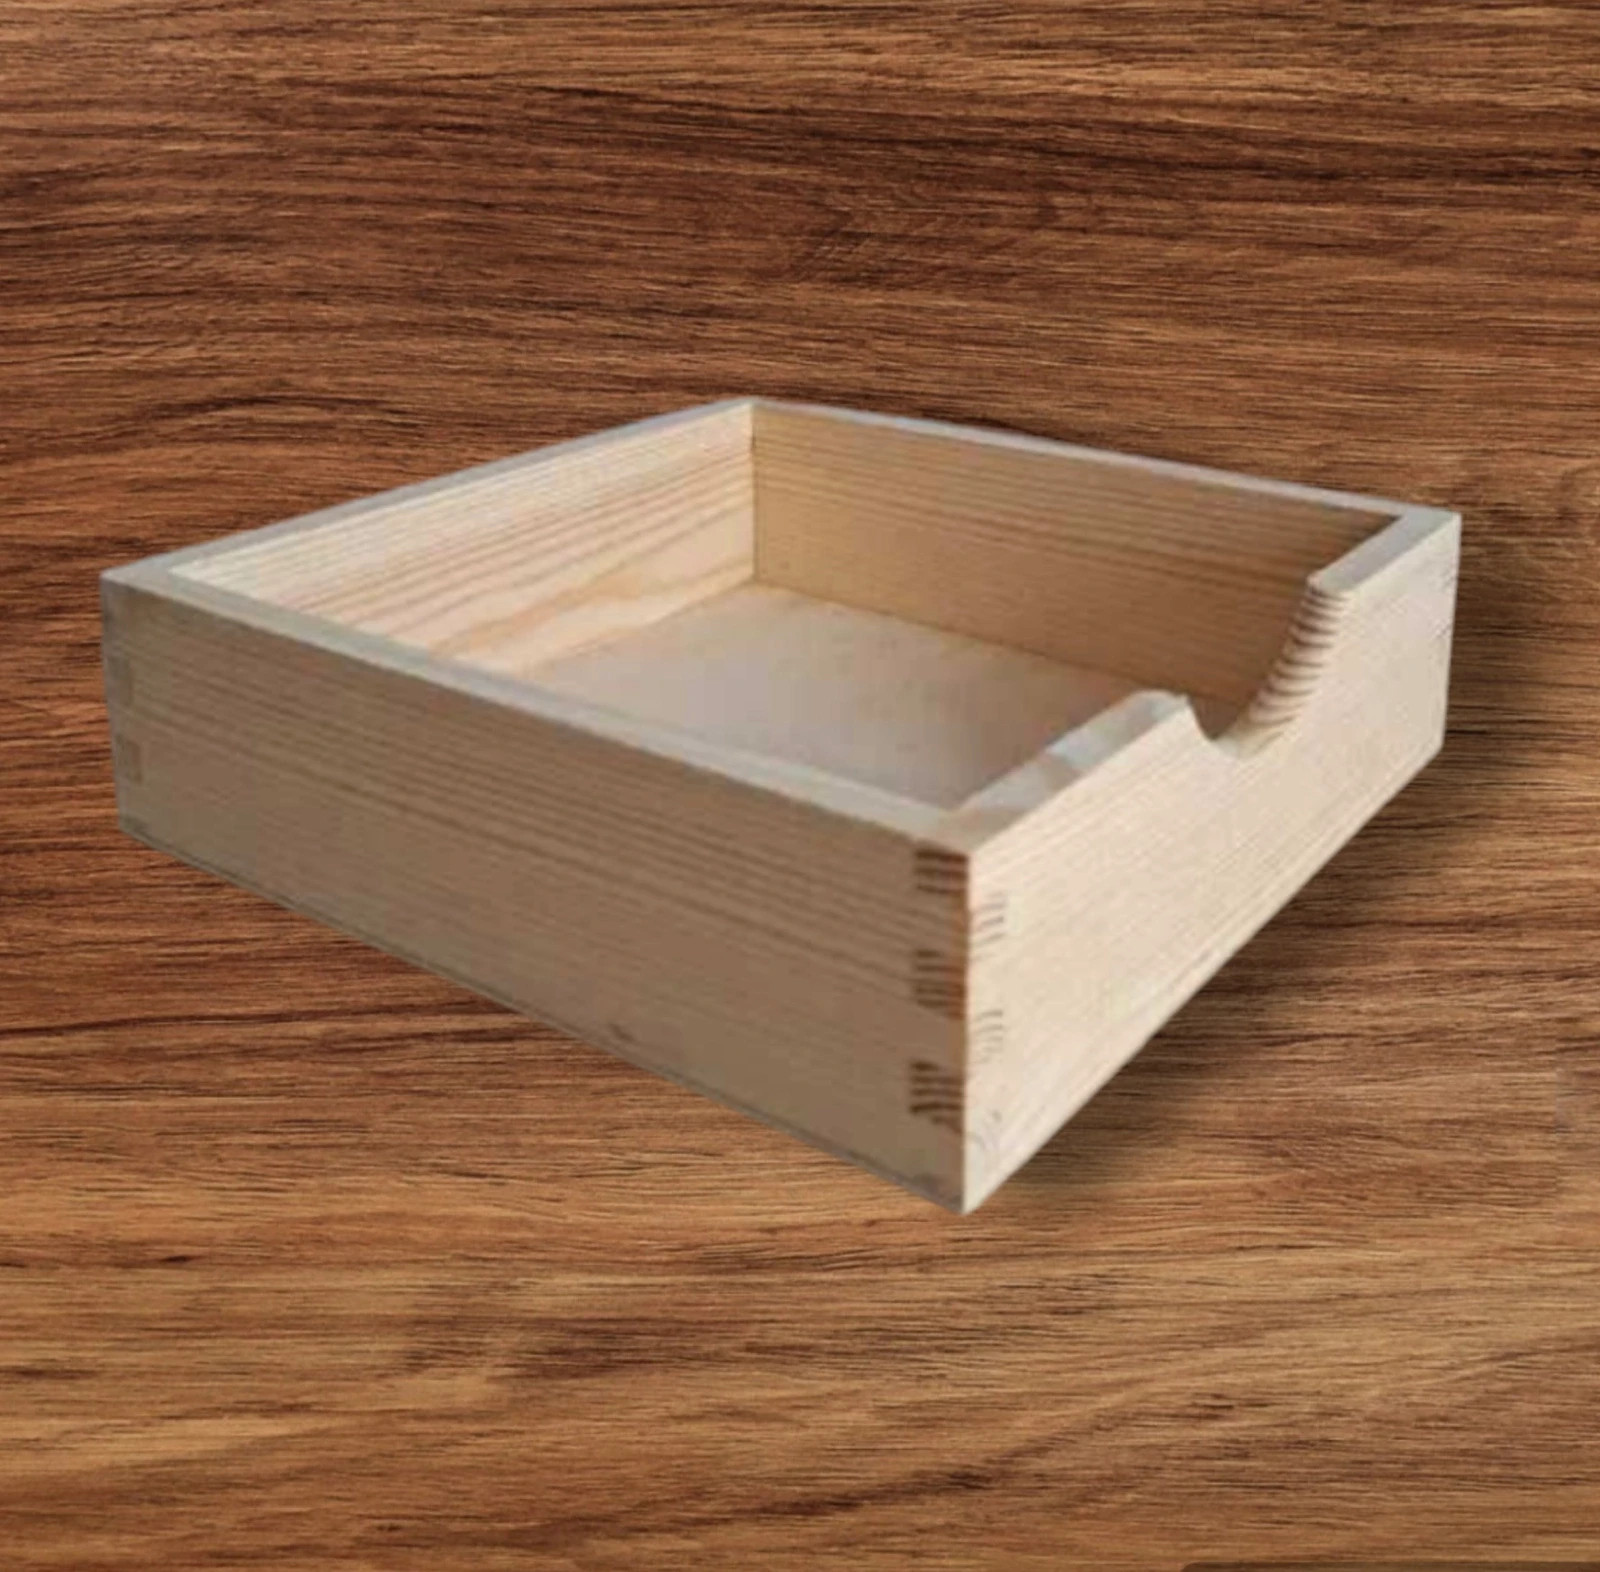 Nowy serwetnik drewniany skrzynka pudełko na serwetki chusteczki